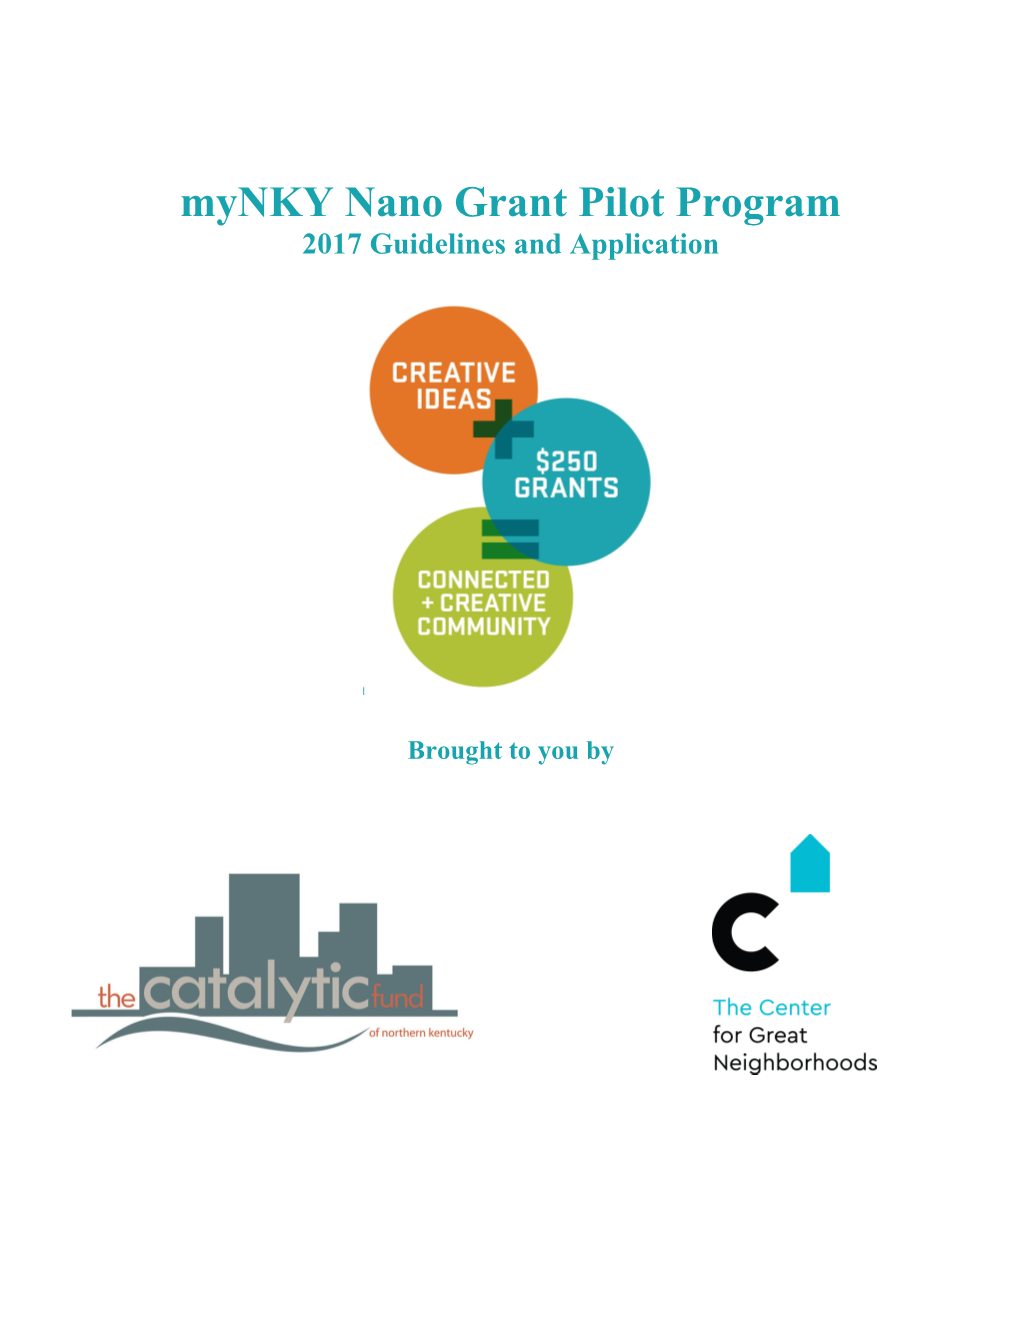 Mynky Nano Grant Pilot Program